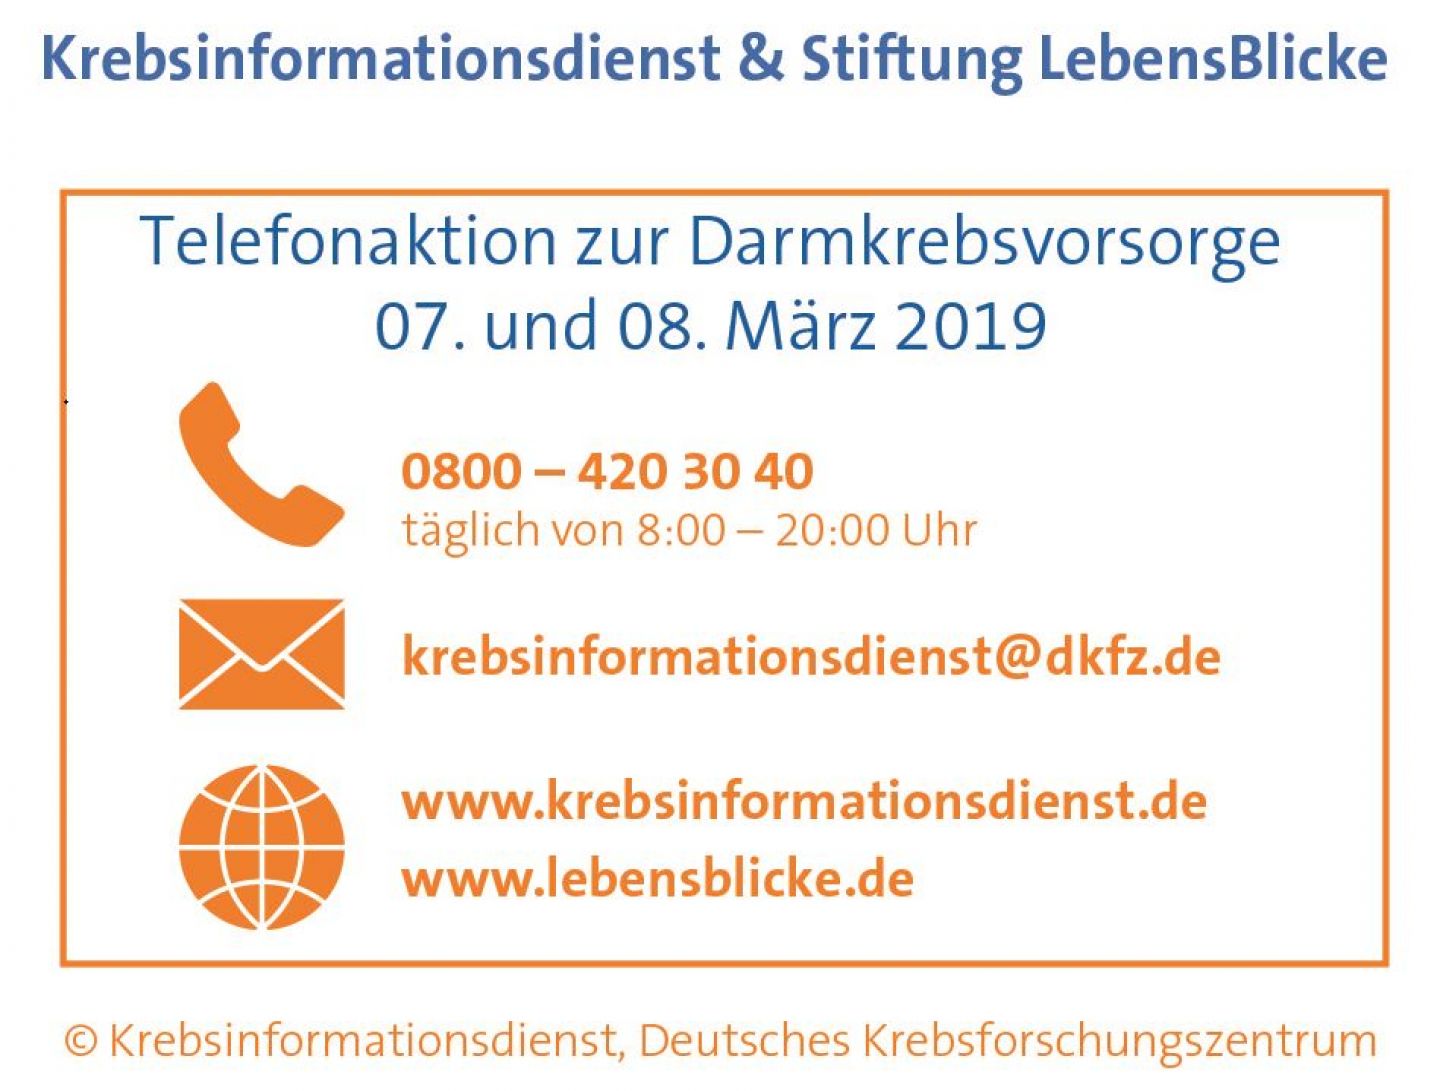 Infokasten zur Telefonaktion 2019 mit der Stiftung LebensBlicke © Krebsinformationsdienst, Deutsches Krebsforschungszentrum